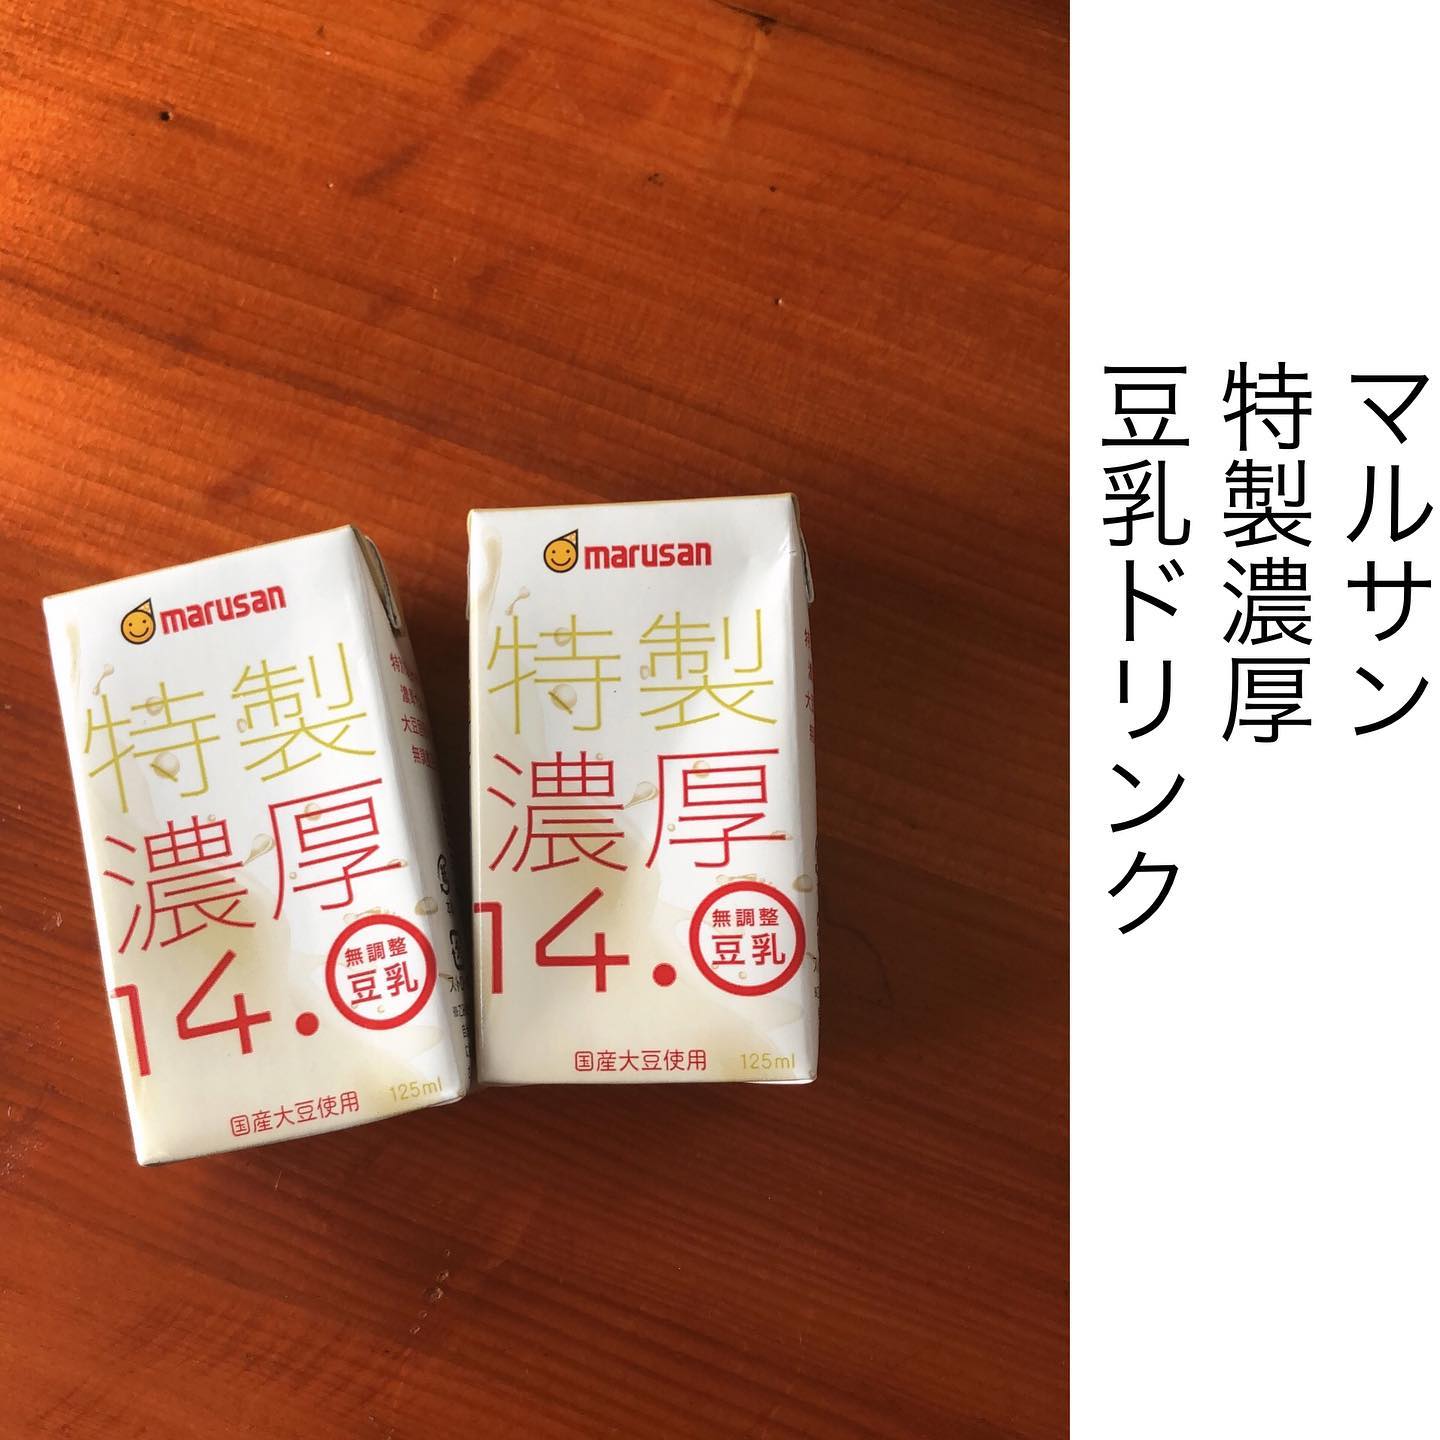 口コミ投稿：marusan特製濃厚14.0無調整豆乳🌼飲みきりサイズ125ml🌼イソフラボン49mg🌼国産大豆無調…